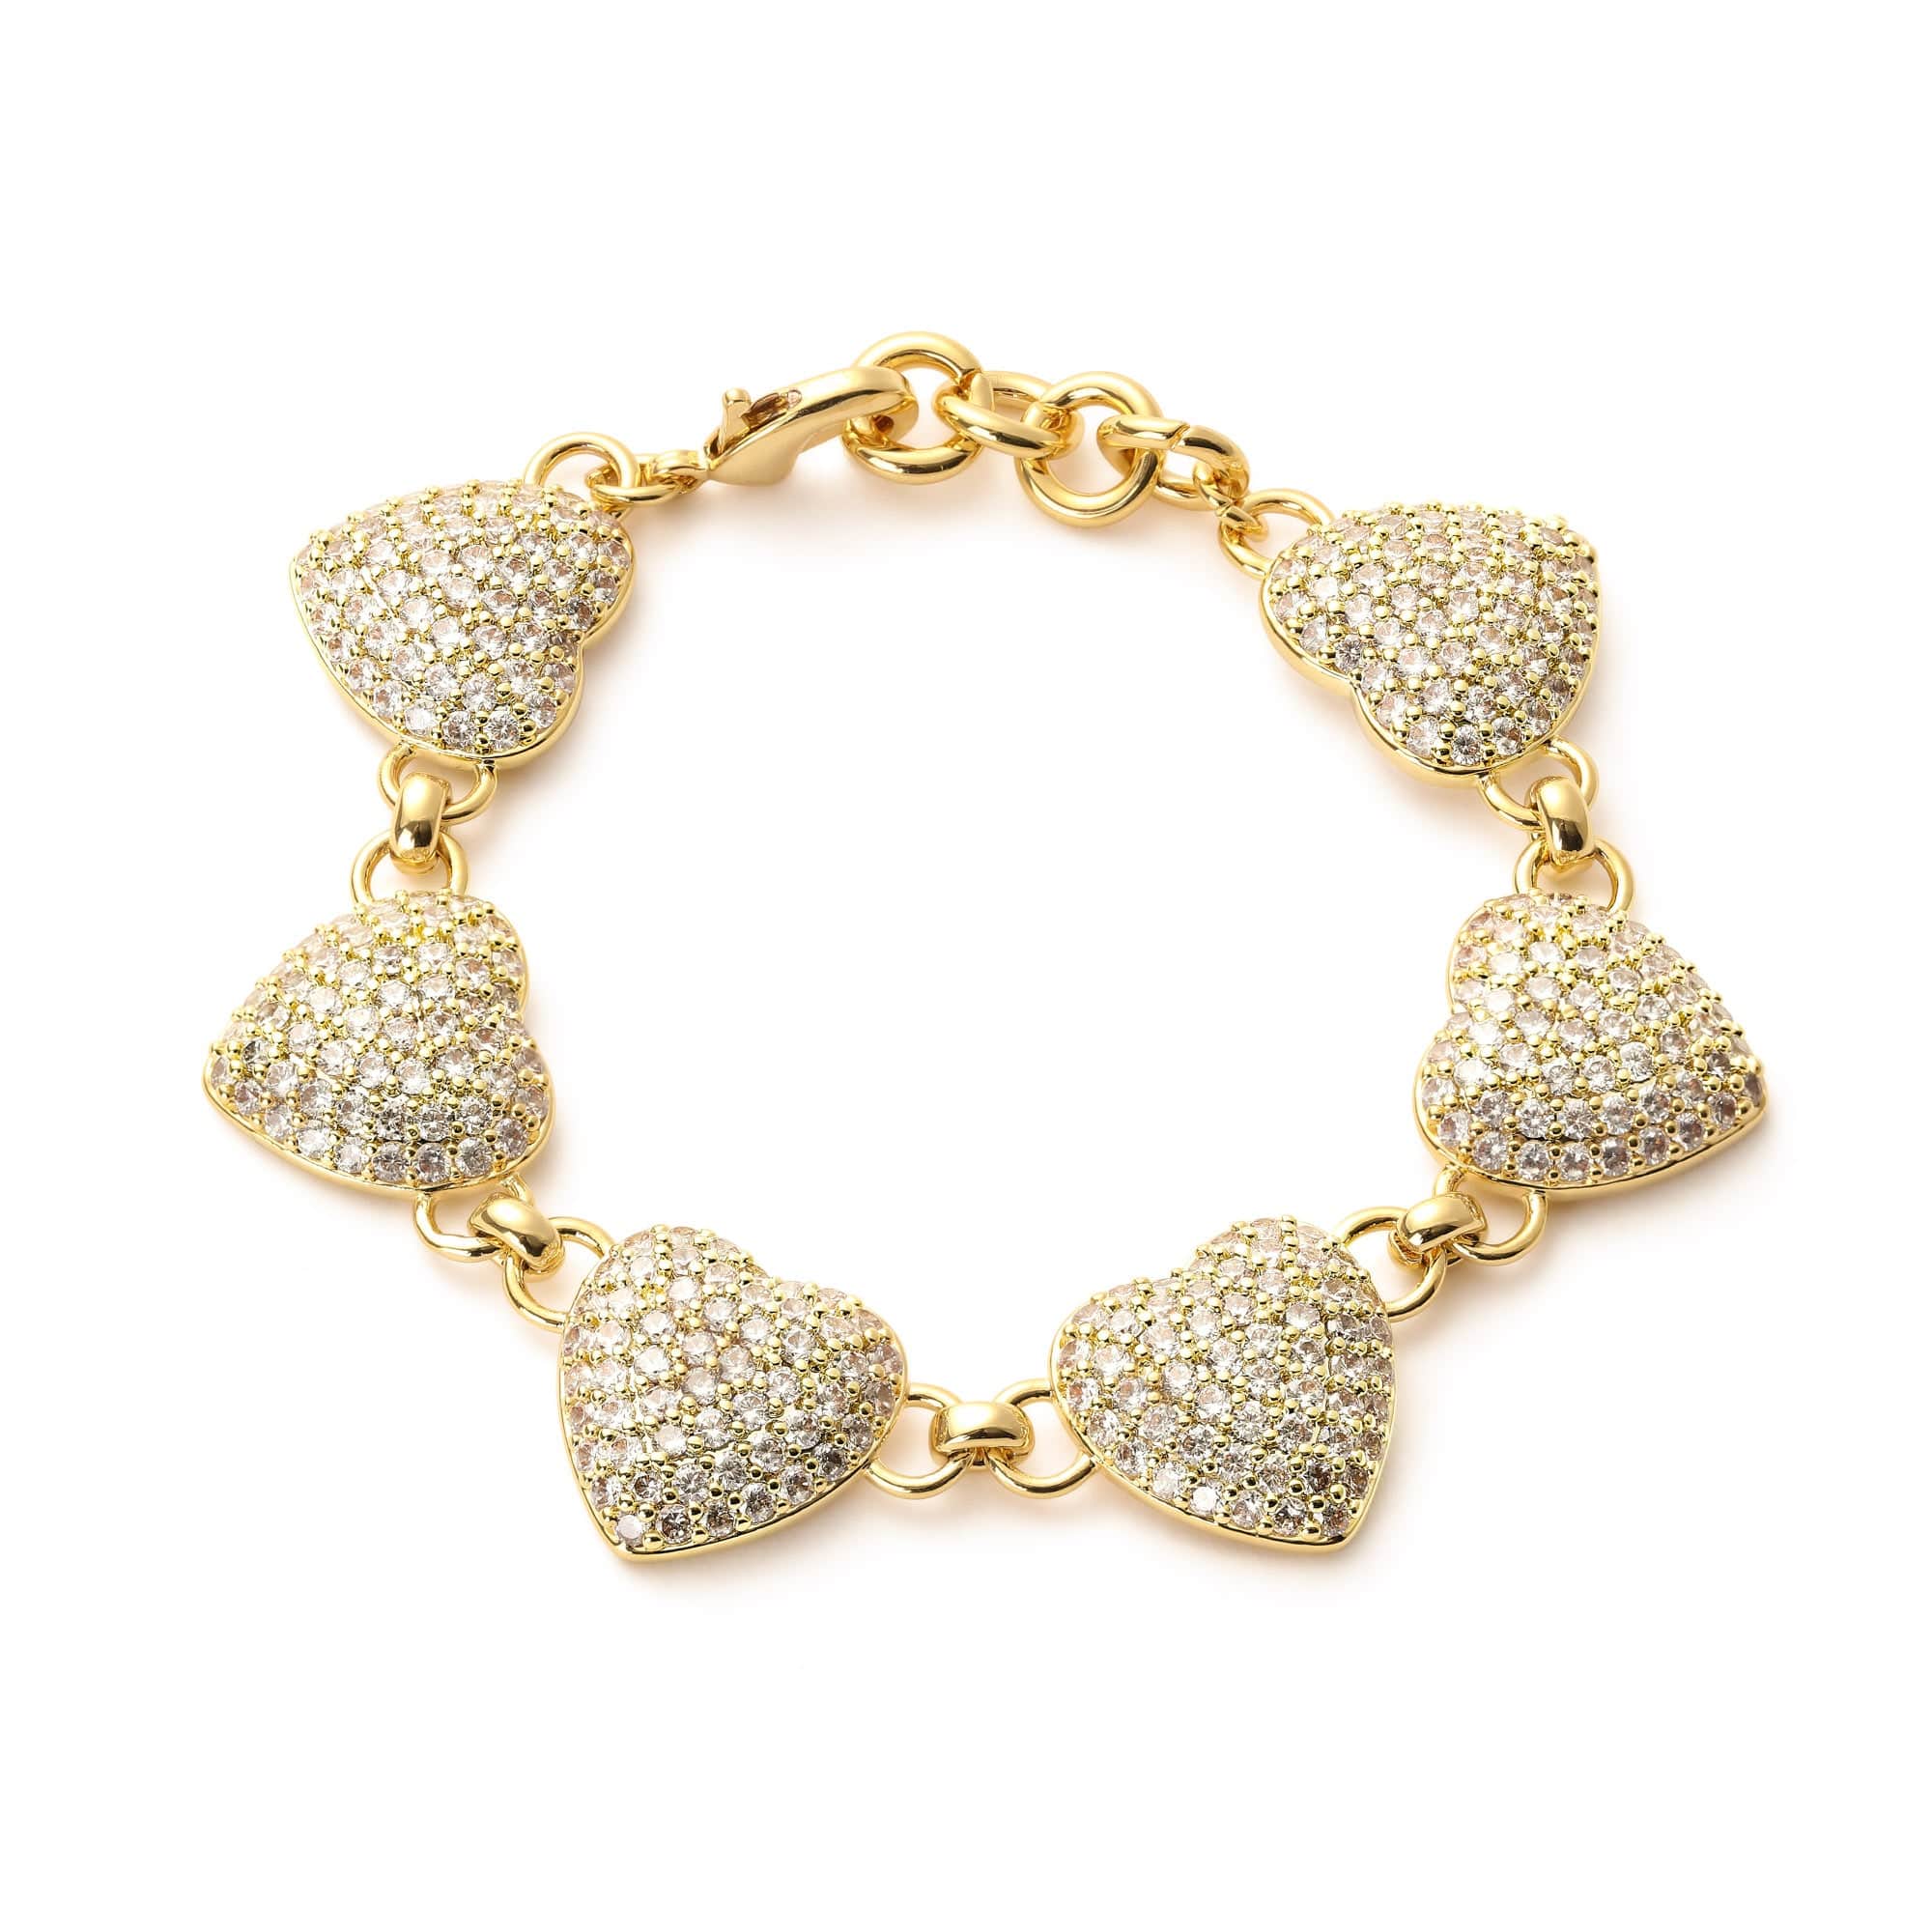 18k Gold-Bonded, Cz Diamonds Bracelets DIAMOND HEART BELCHER BRACELET 18MM